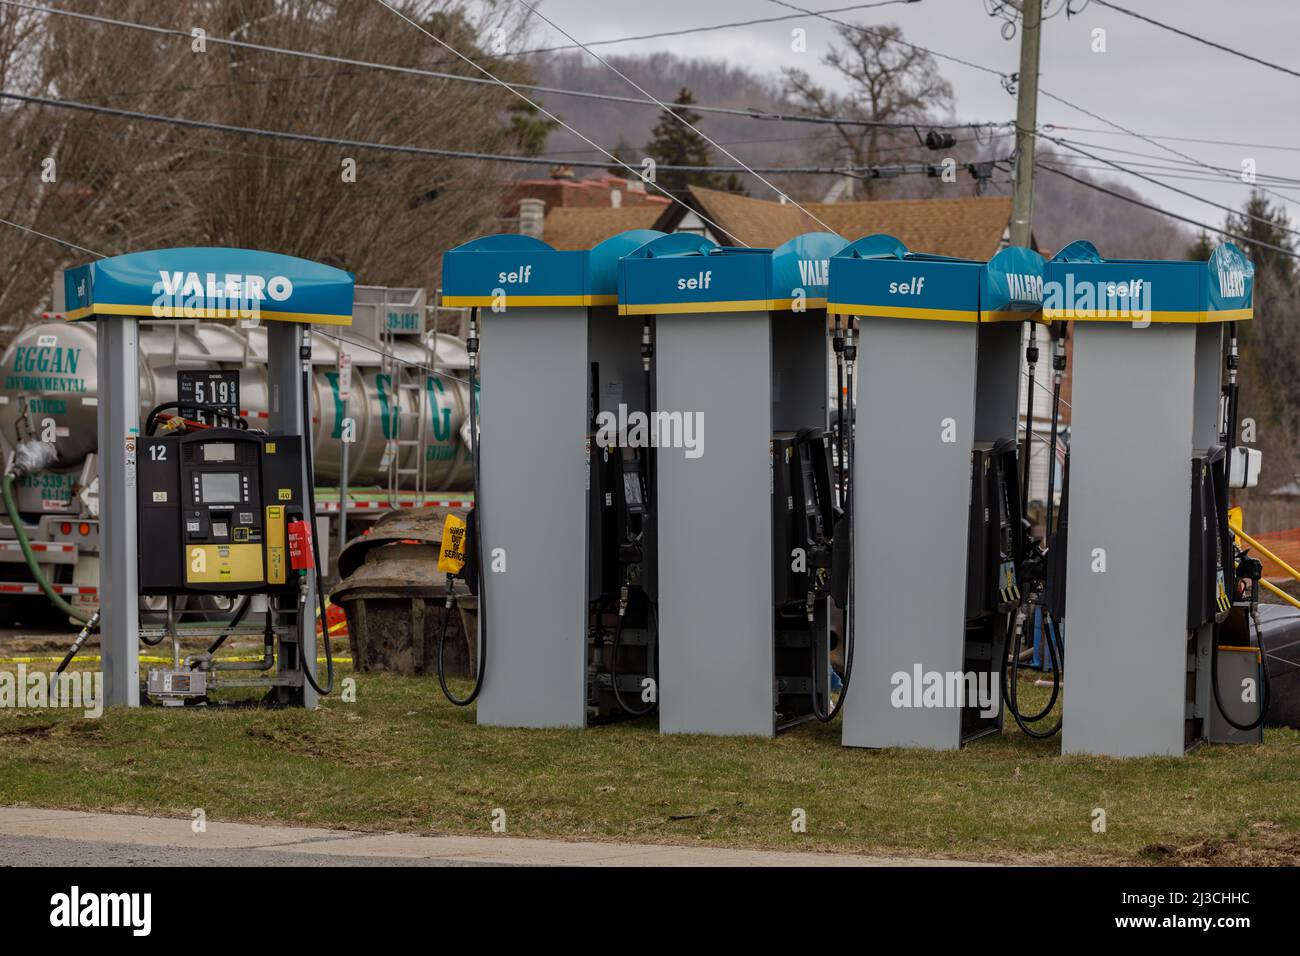 Le nuove pompe a gas attendono l'installazione presso una stazione di servizio Valero sulla US Route 20 nella frazione di Bridgewater, contea di Oneida, stato di New York. Foto Stock